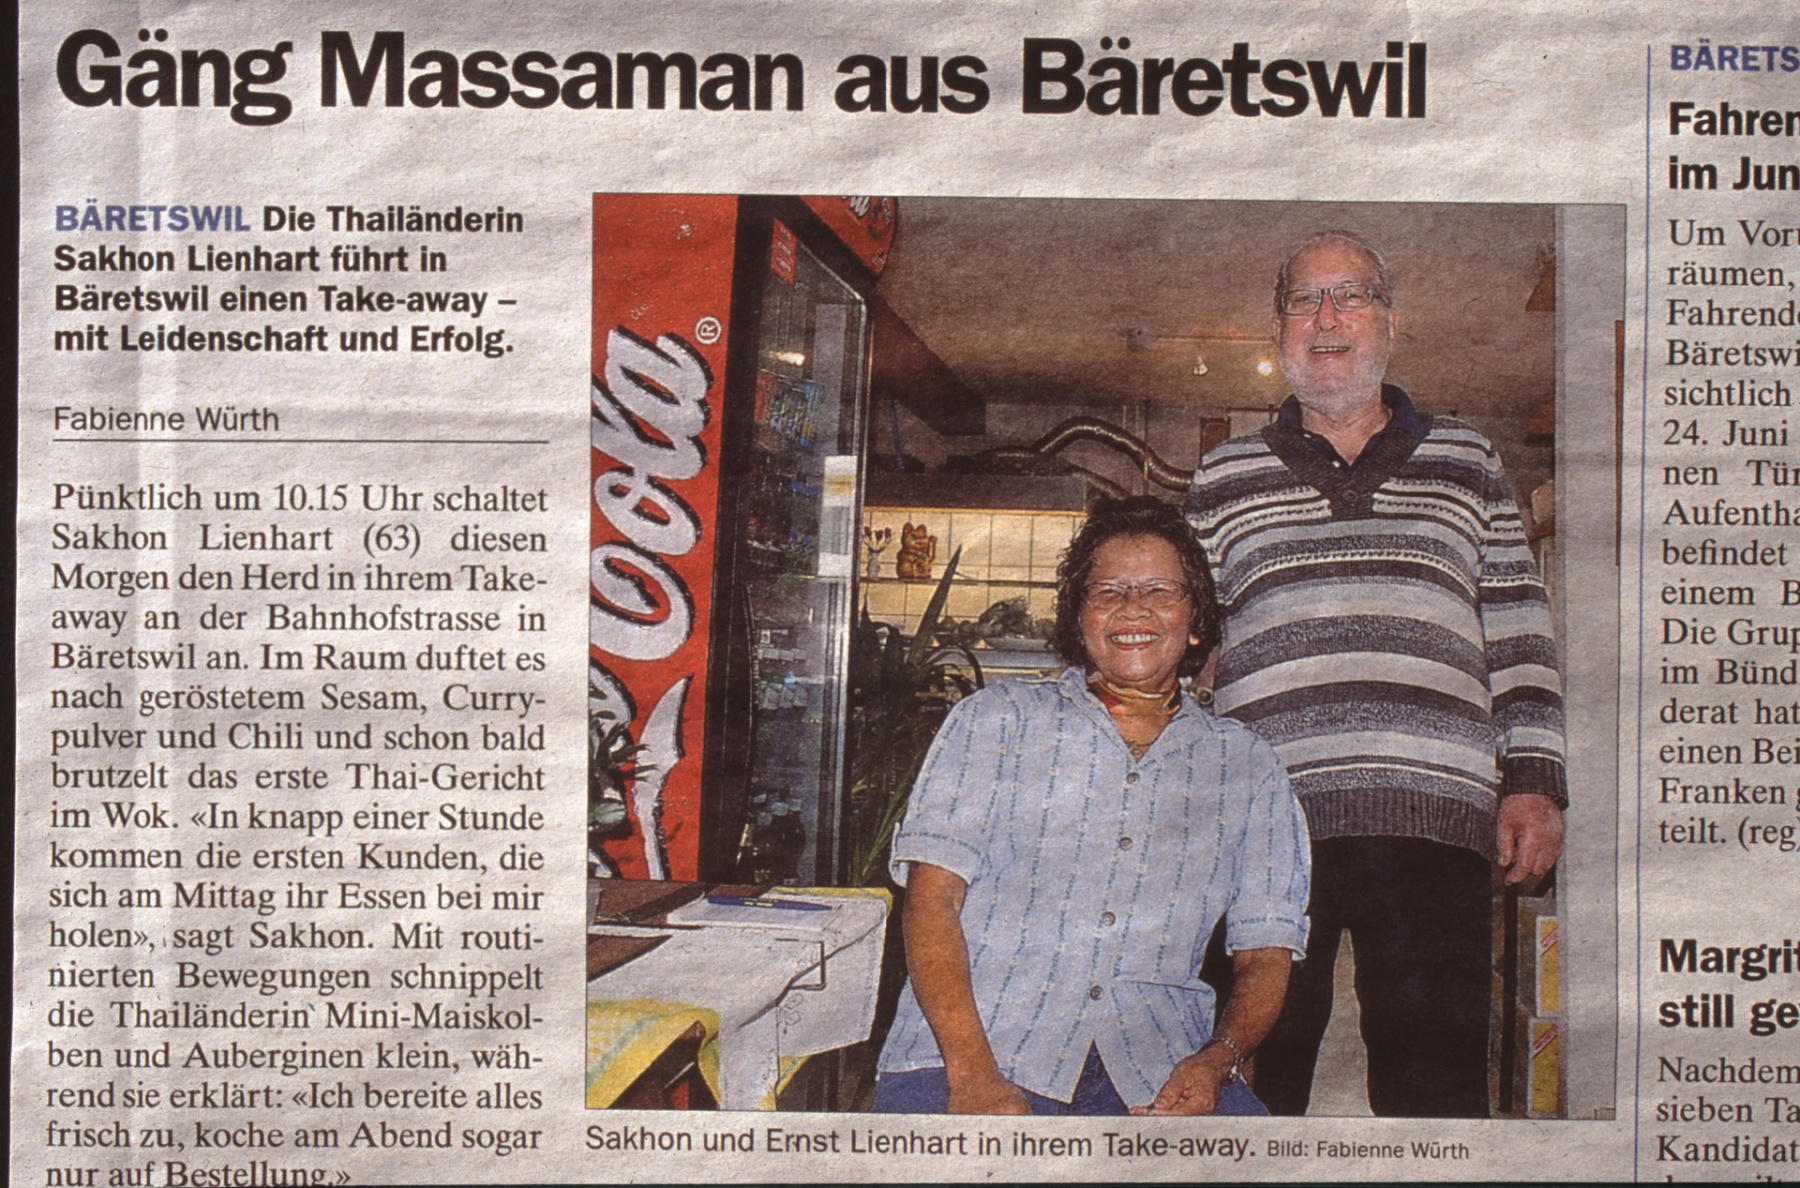 «Gäng Massaman aus Bäretswil» ehem Schuhmacherei, Zeitungsartikel zum Thai Takeaway